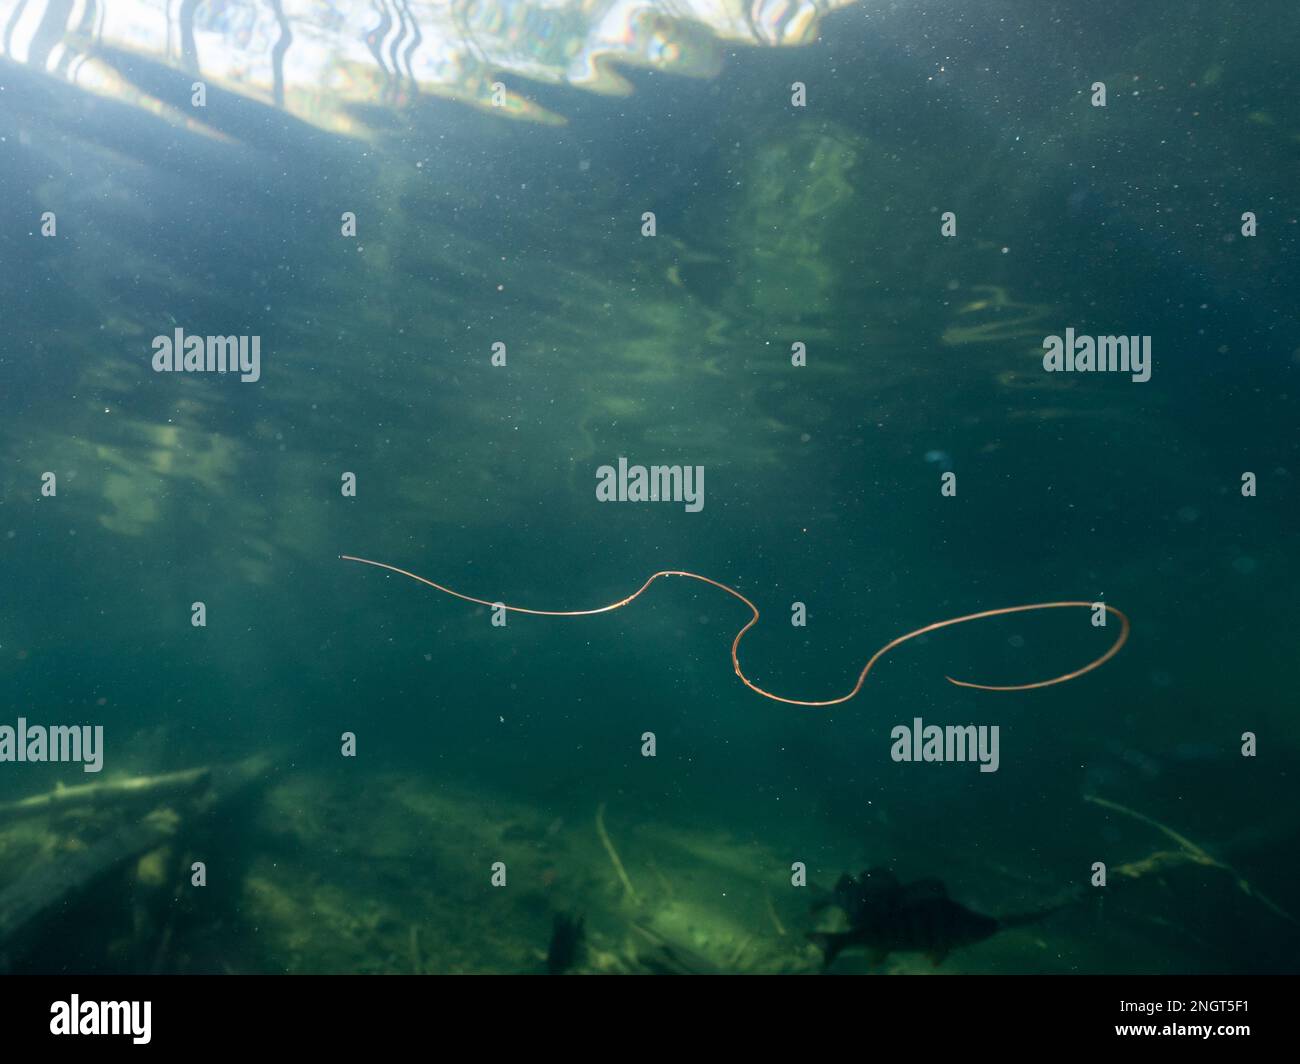 Horsehair worm swimmin underwater in lake Stock Photo